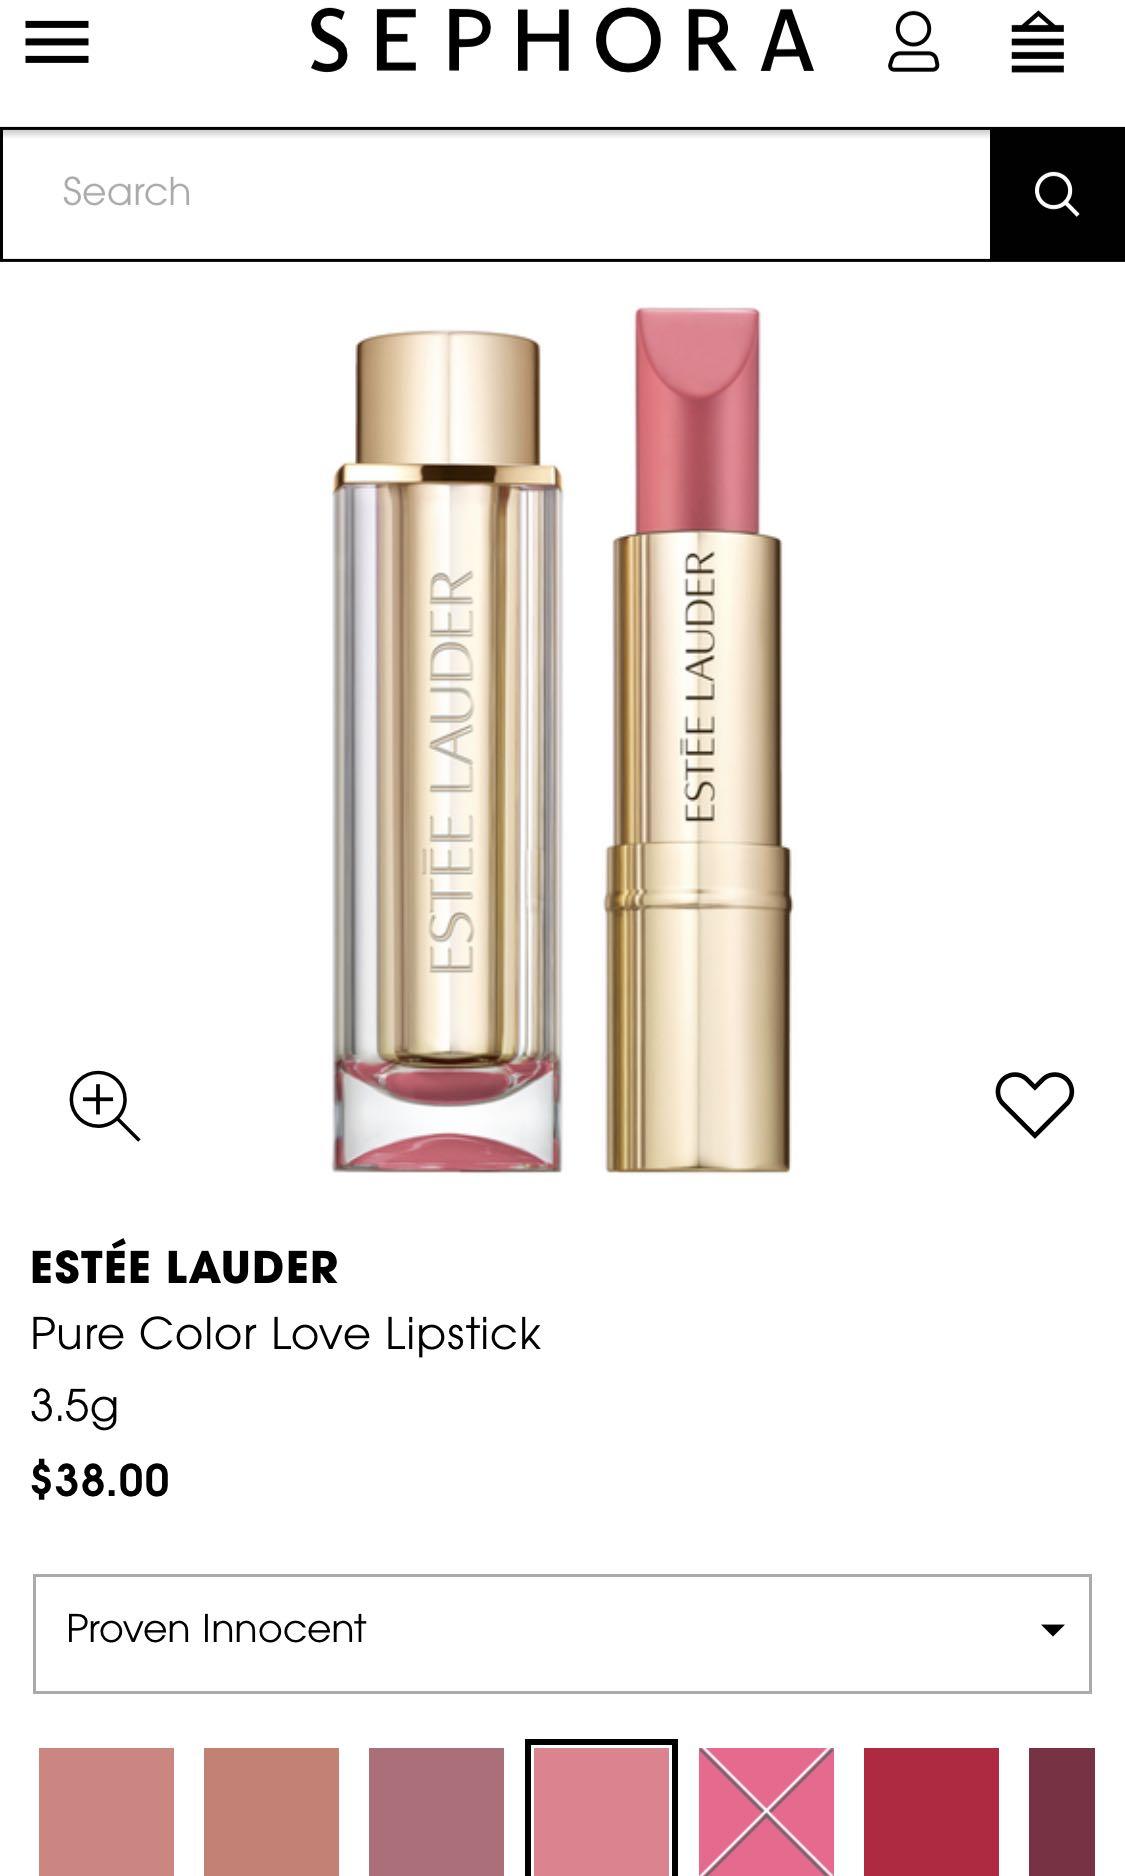 Estee lauder lipstick pure love colour proven innocent 200, Health ...